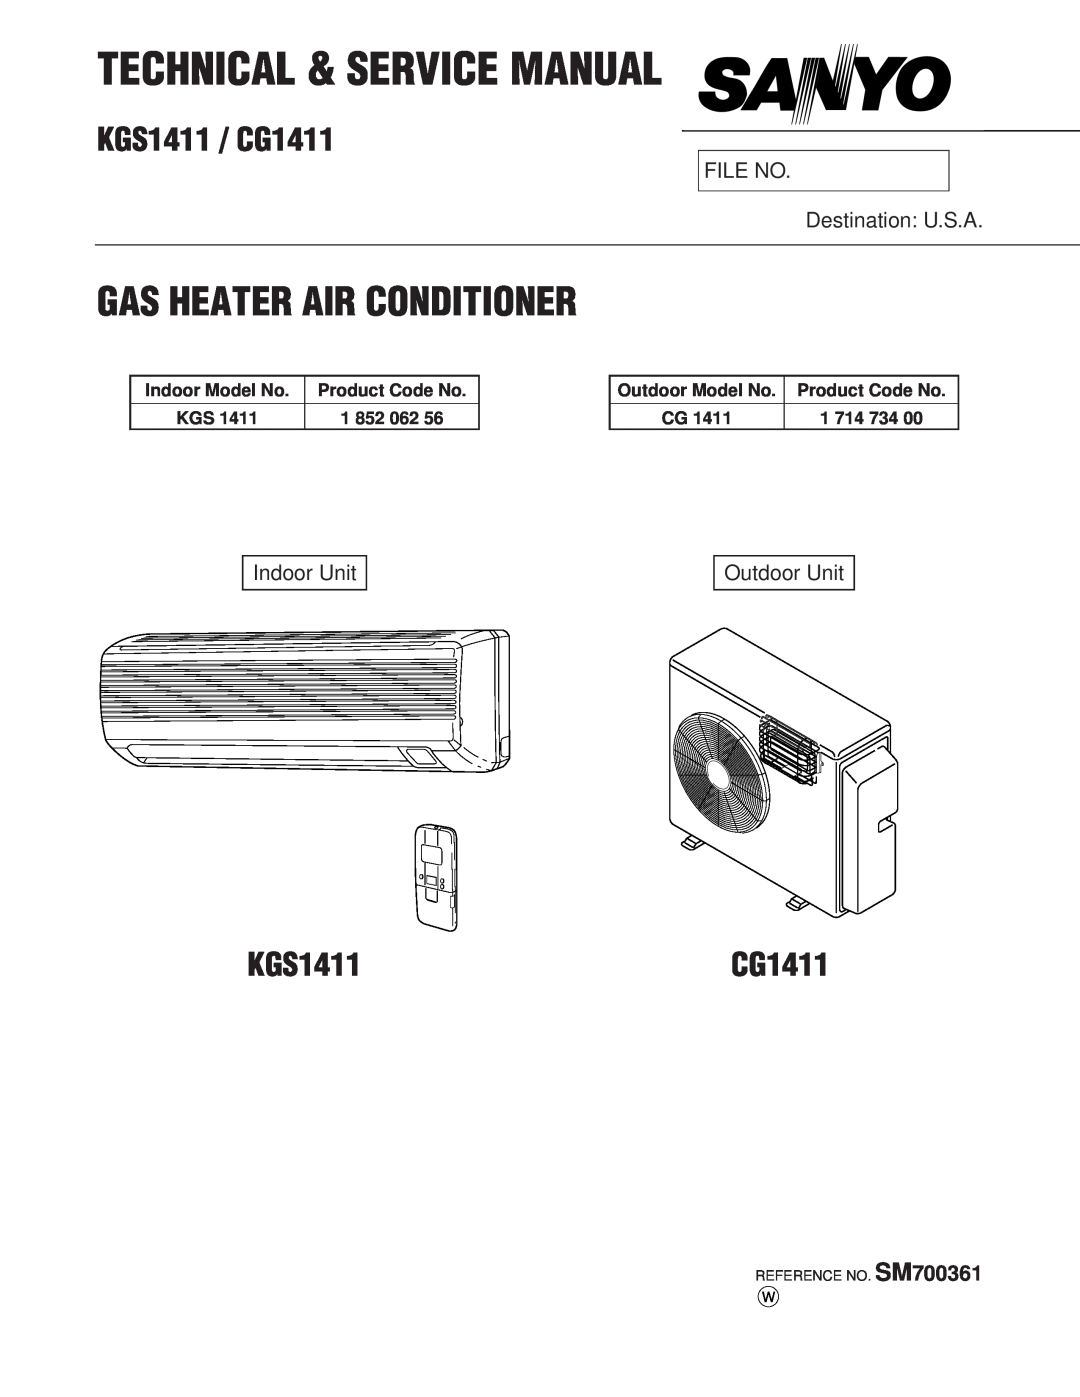 Sanyo service manual KGS1411 / CG1411, Gas Heater Air Conditioner, FILE NO Destination U.S.A, Indoor Unit, Outdoor Unit 